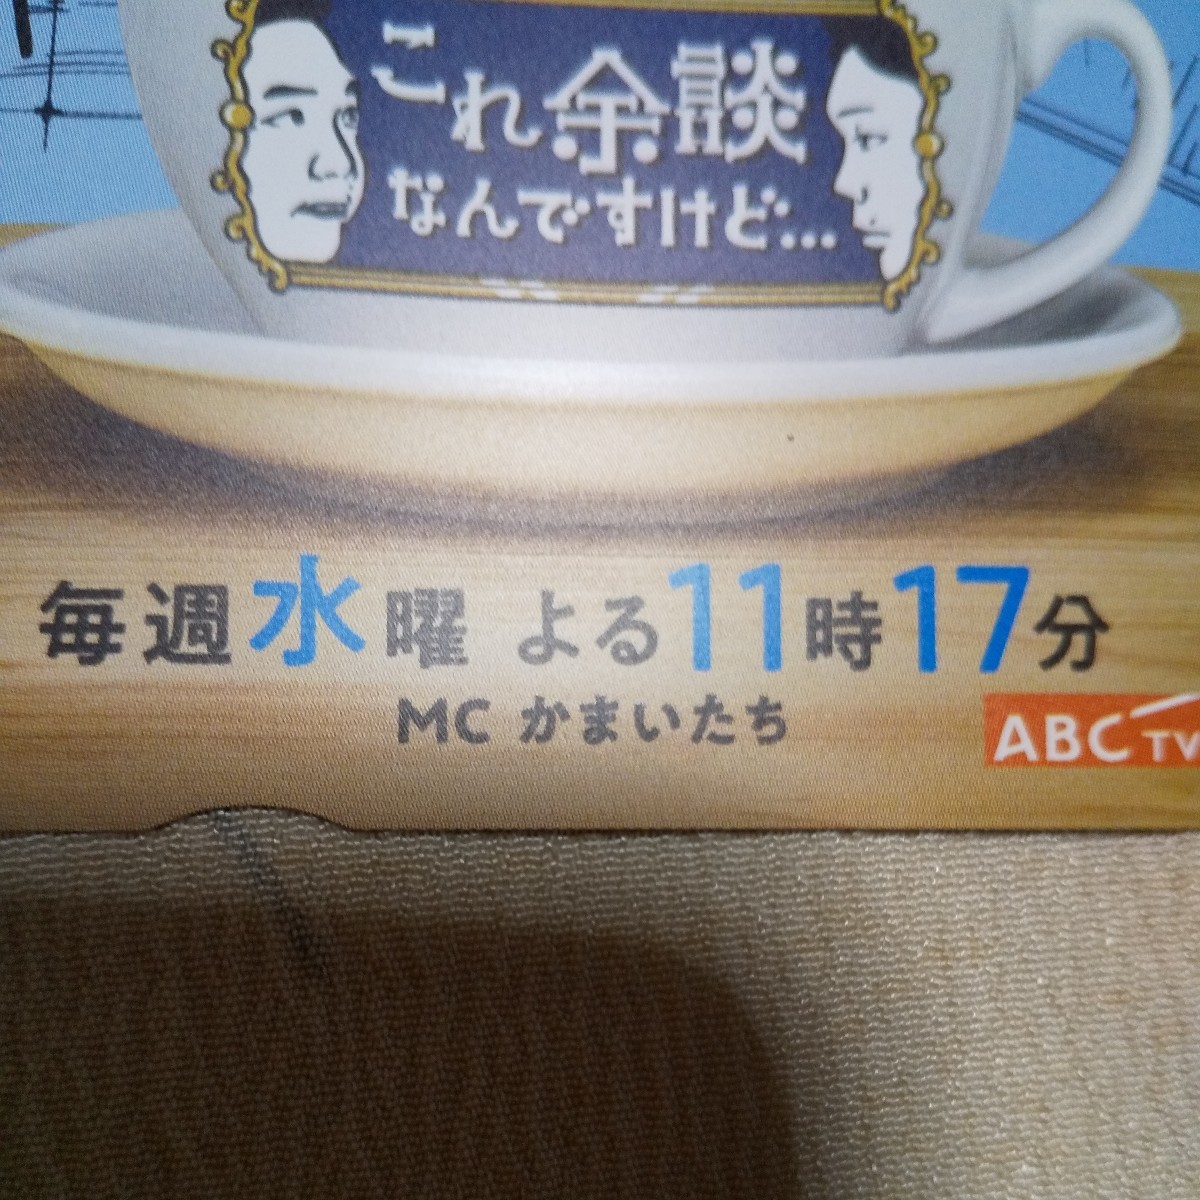  новый товар очень редкий QUO карта 500 иен серп кама ... не продается акционер гостеприимство . человек супермаркет koka карта предоплаты 